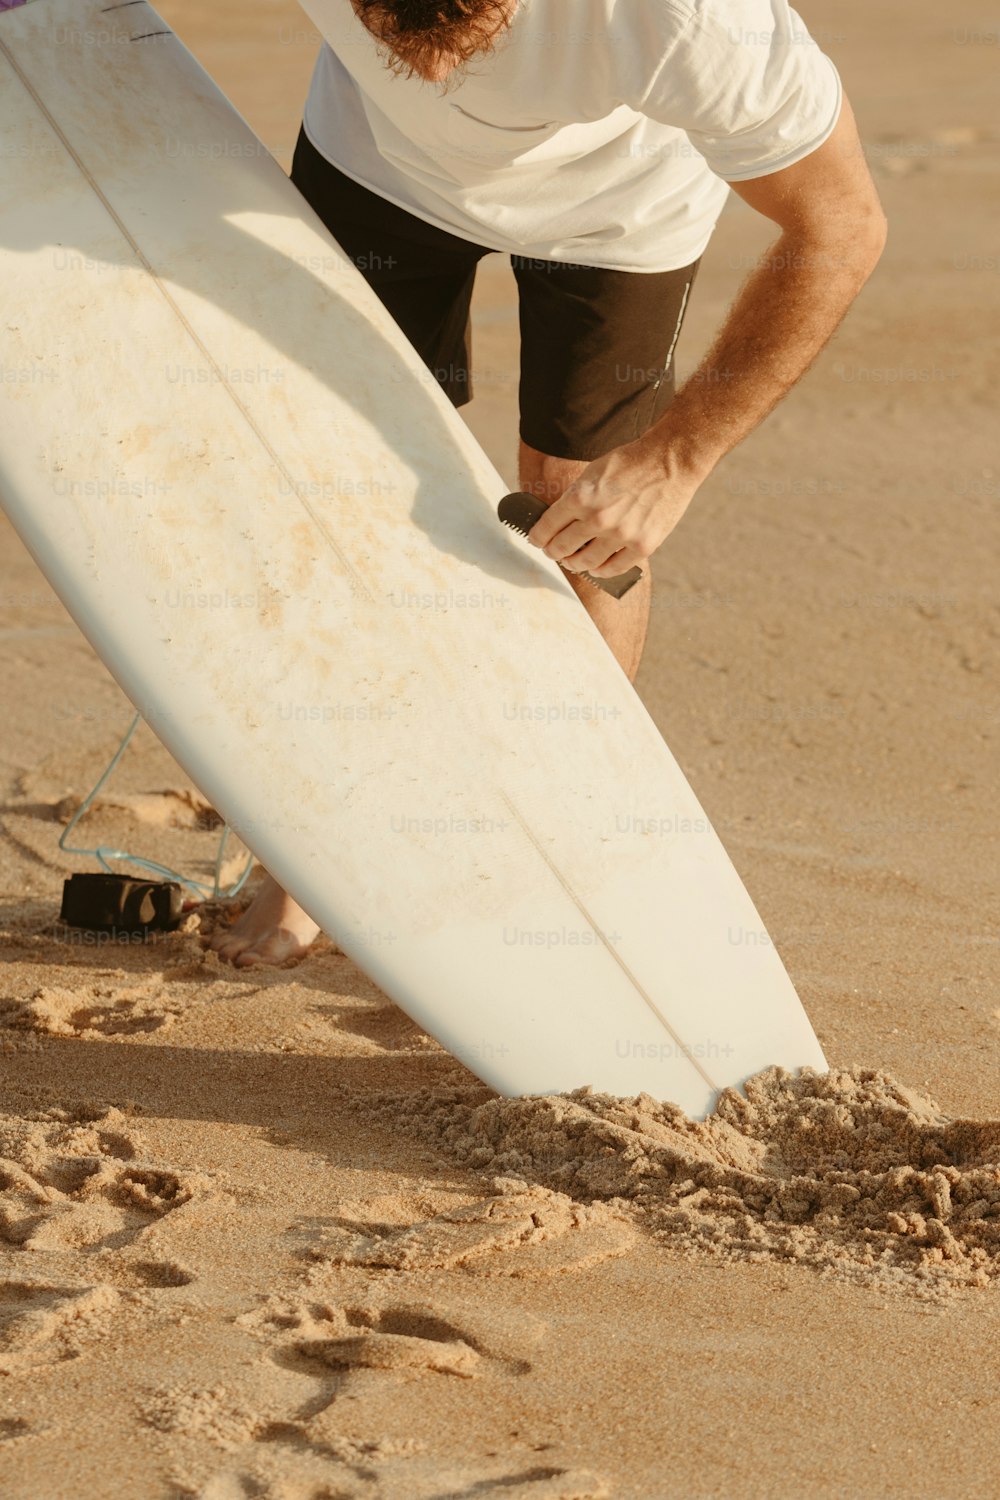 a man holding a surfboard on a sandy beach